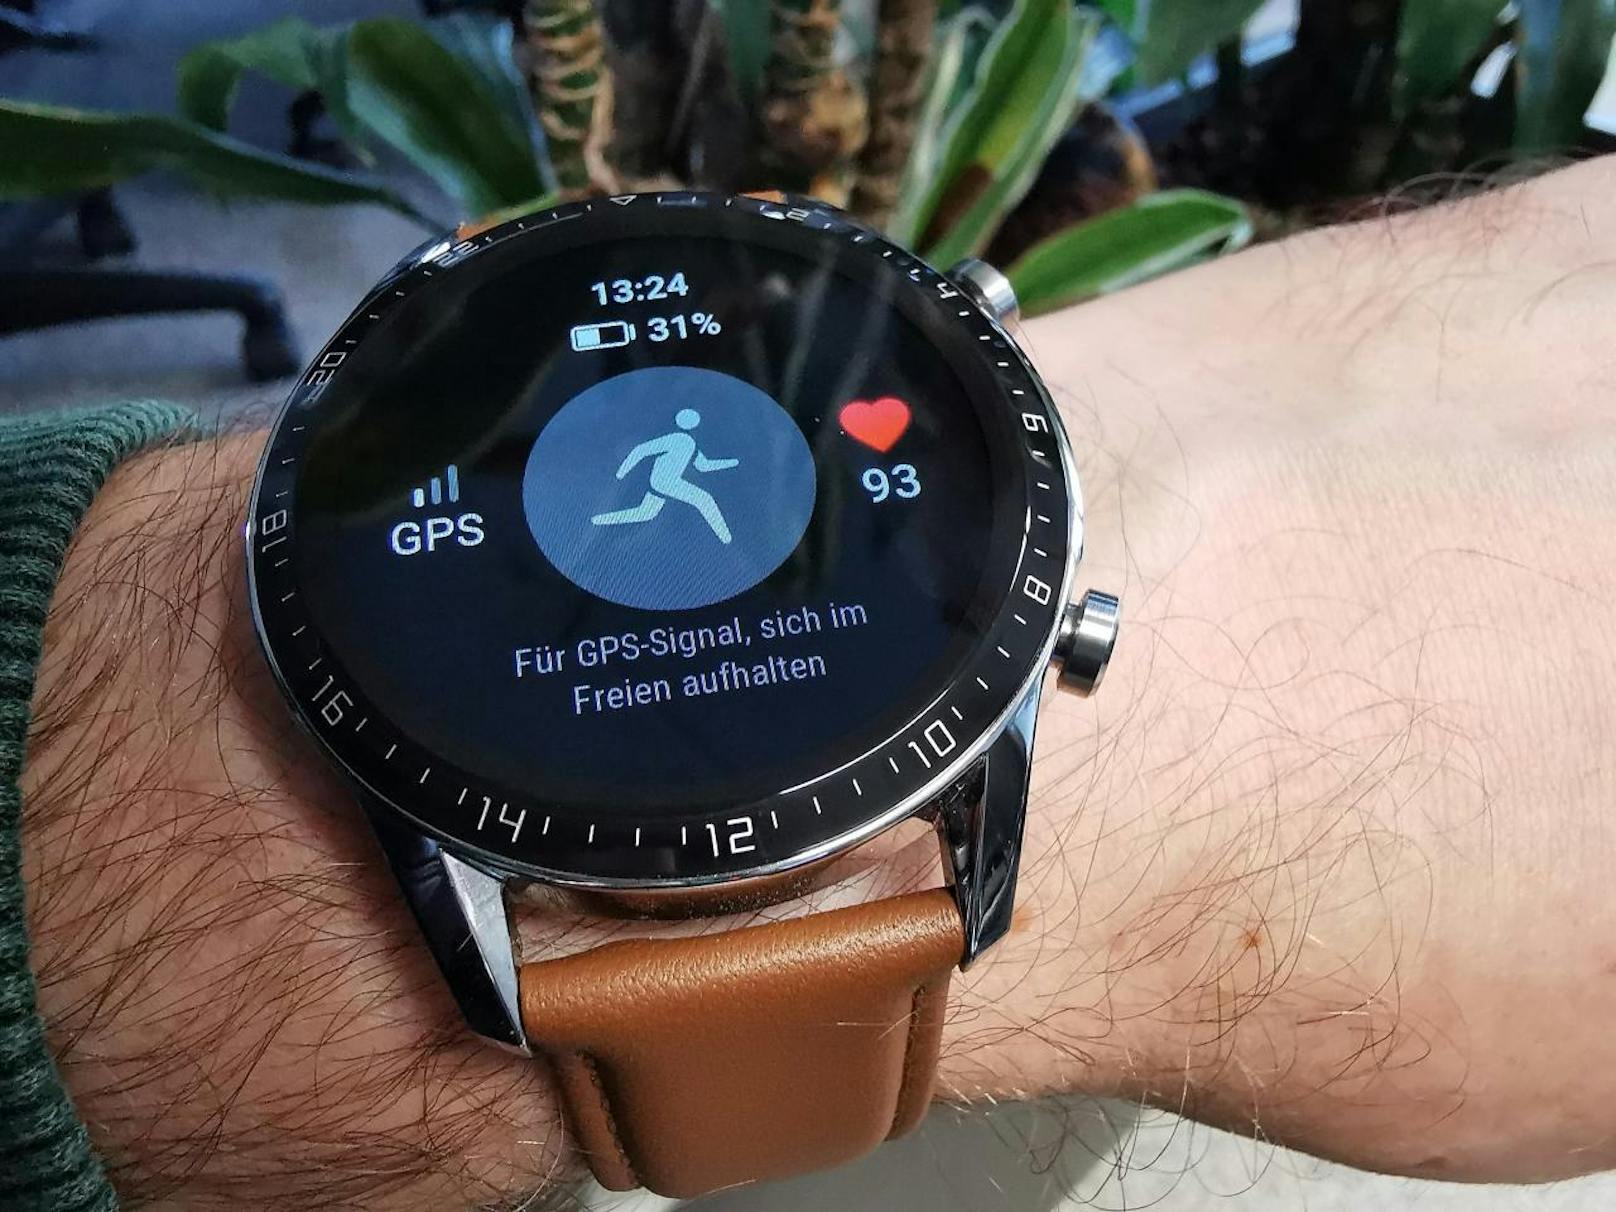 Huawei-gewohnt ist die Smartwatch schnell betriebsbereit. Zur Nutzung benötigt man auf dem Smartphone, das man koppeln will, die Huawei-App Health.